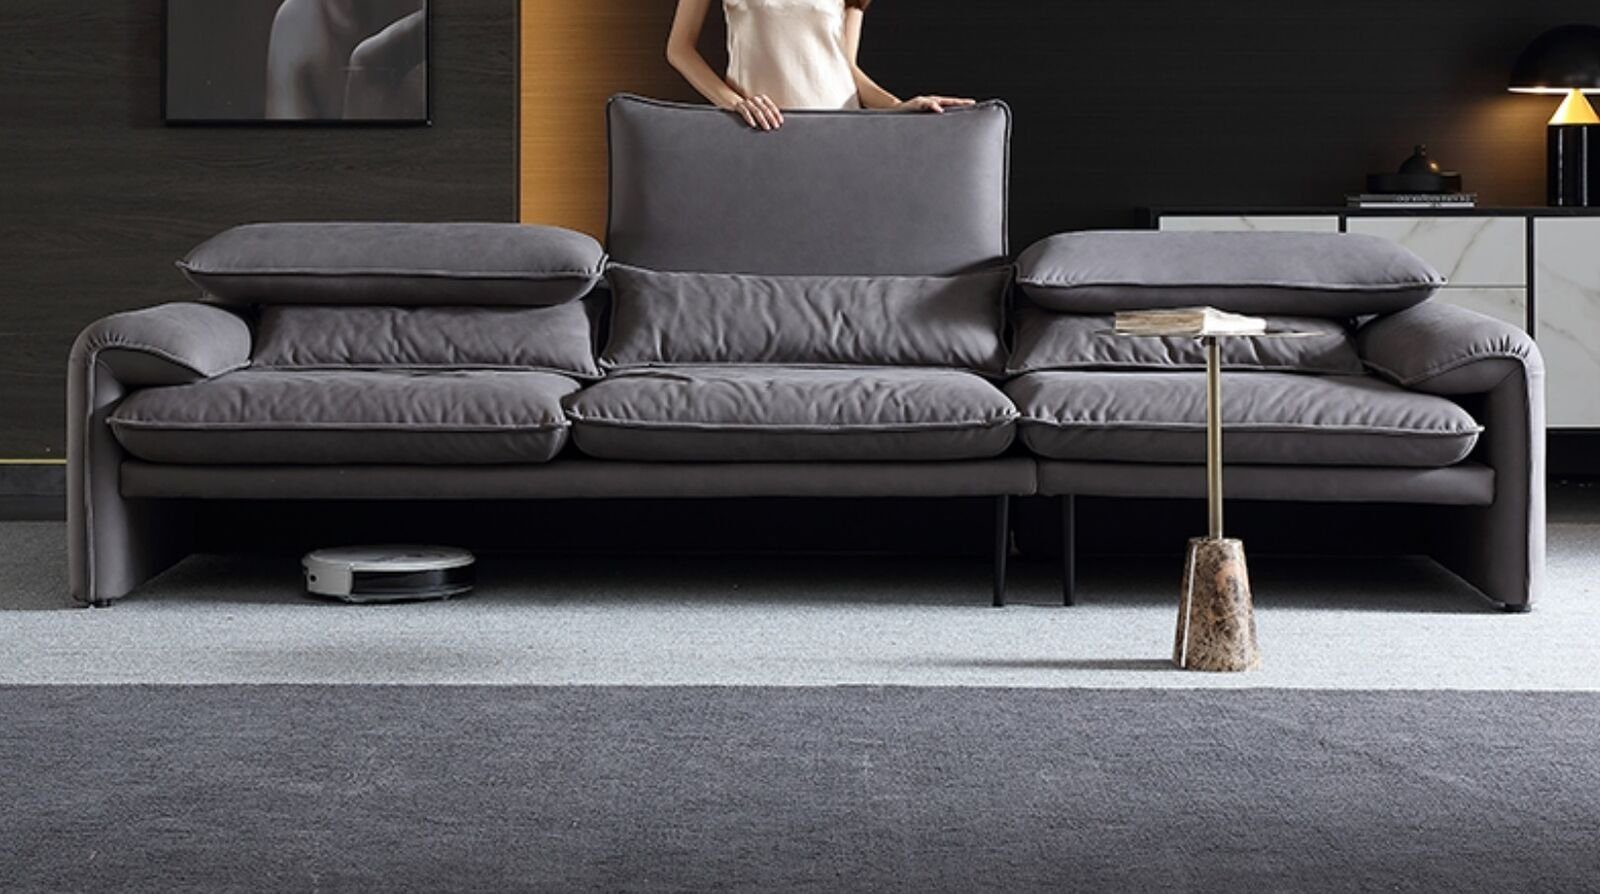 JVmoebel Sofa, Sitzer Sofas Sofa Big Wohnzimmer Couch 4 Neu xxl Design Textil